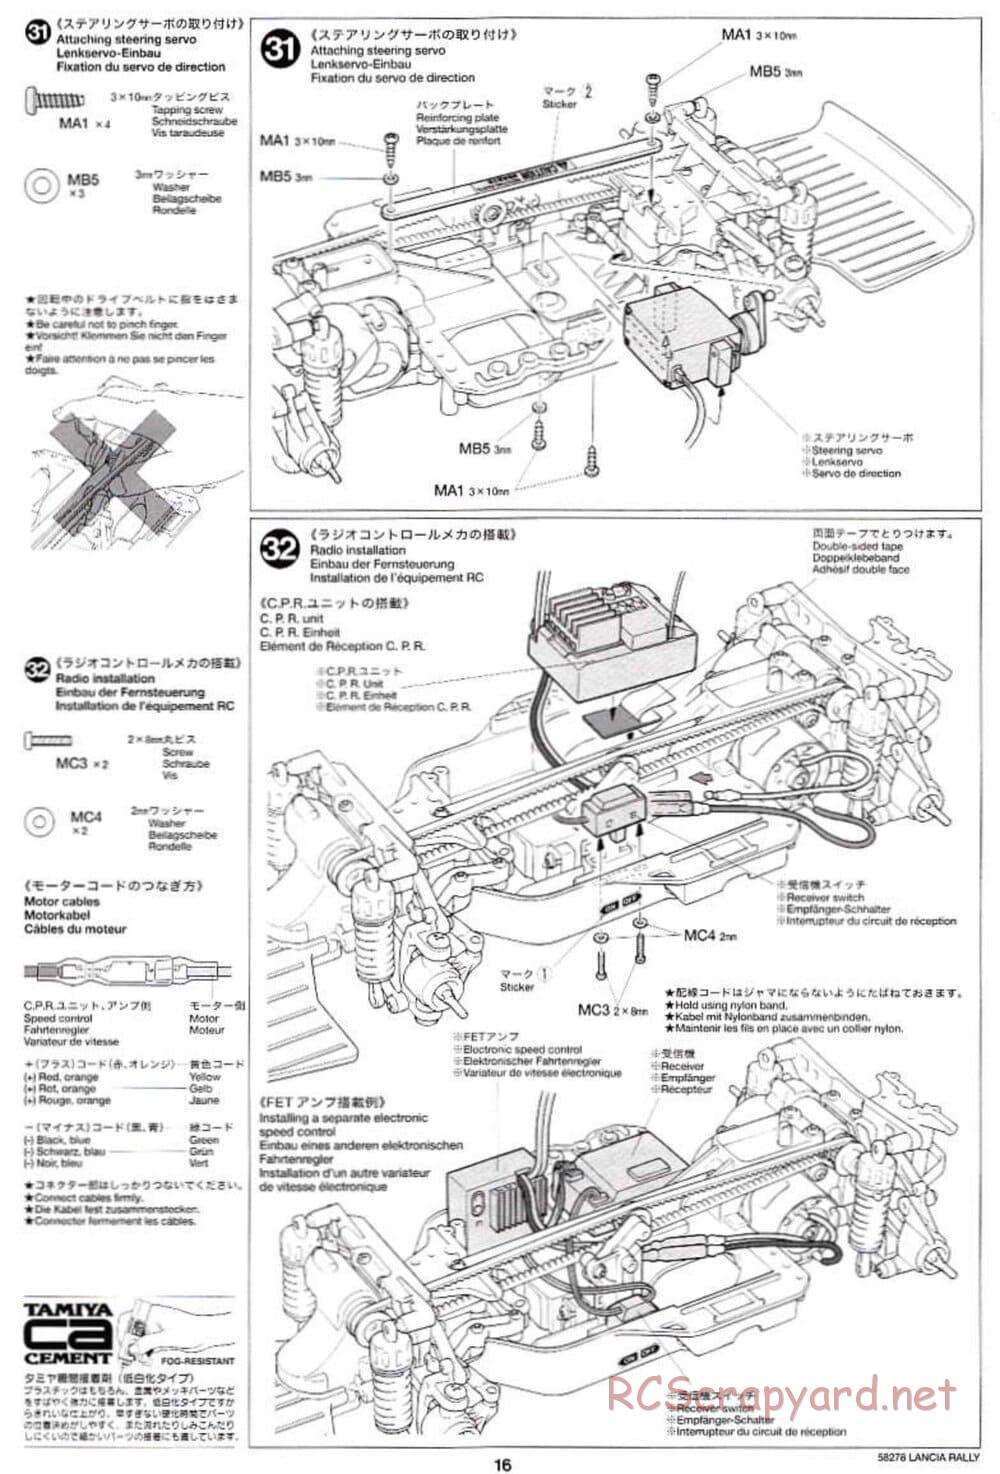 Tamiya - Lancia 037 Rally - TA-03RS Chassis - Manual - Page 16